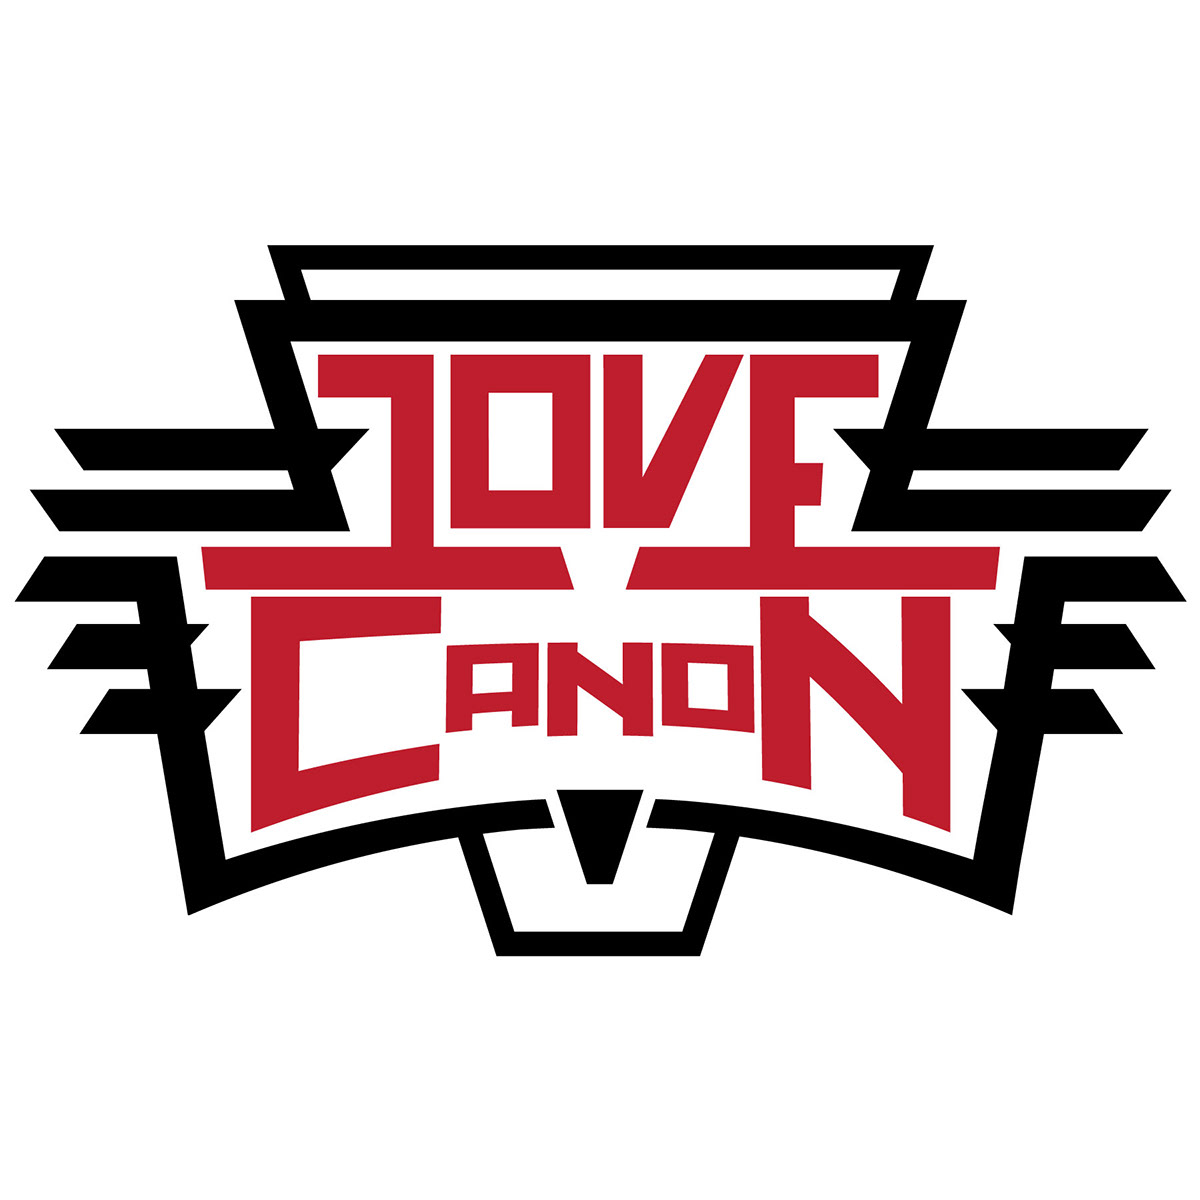 Love Musical artist logo art graphic Illustrator design